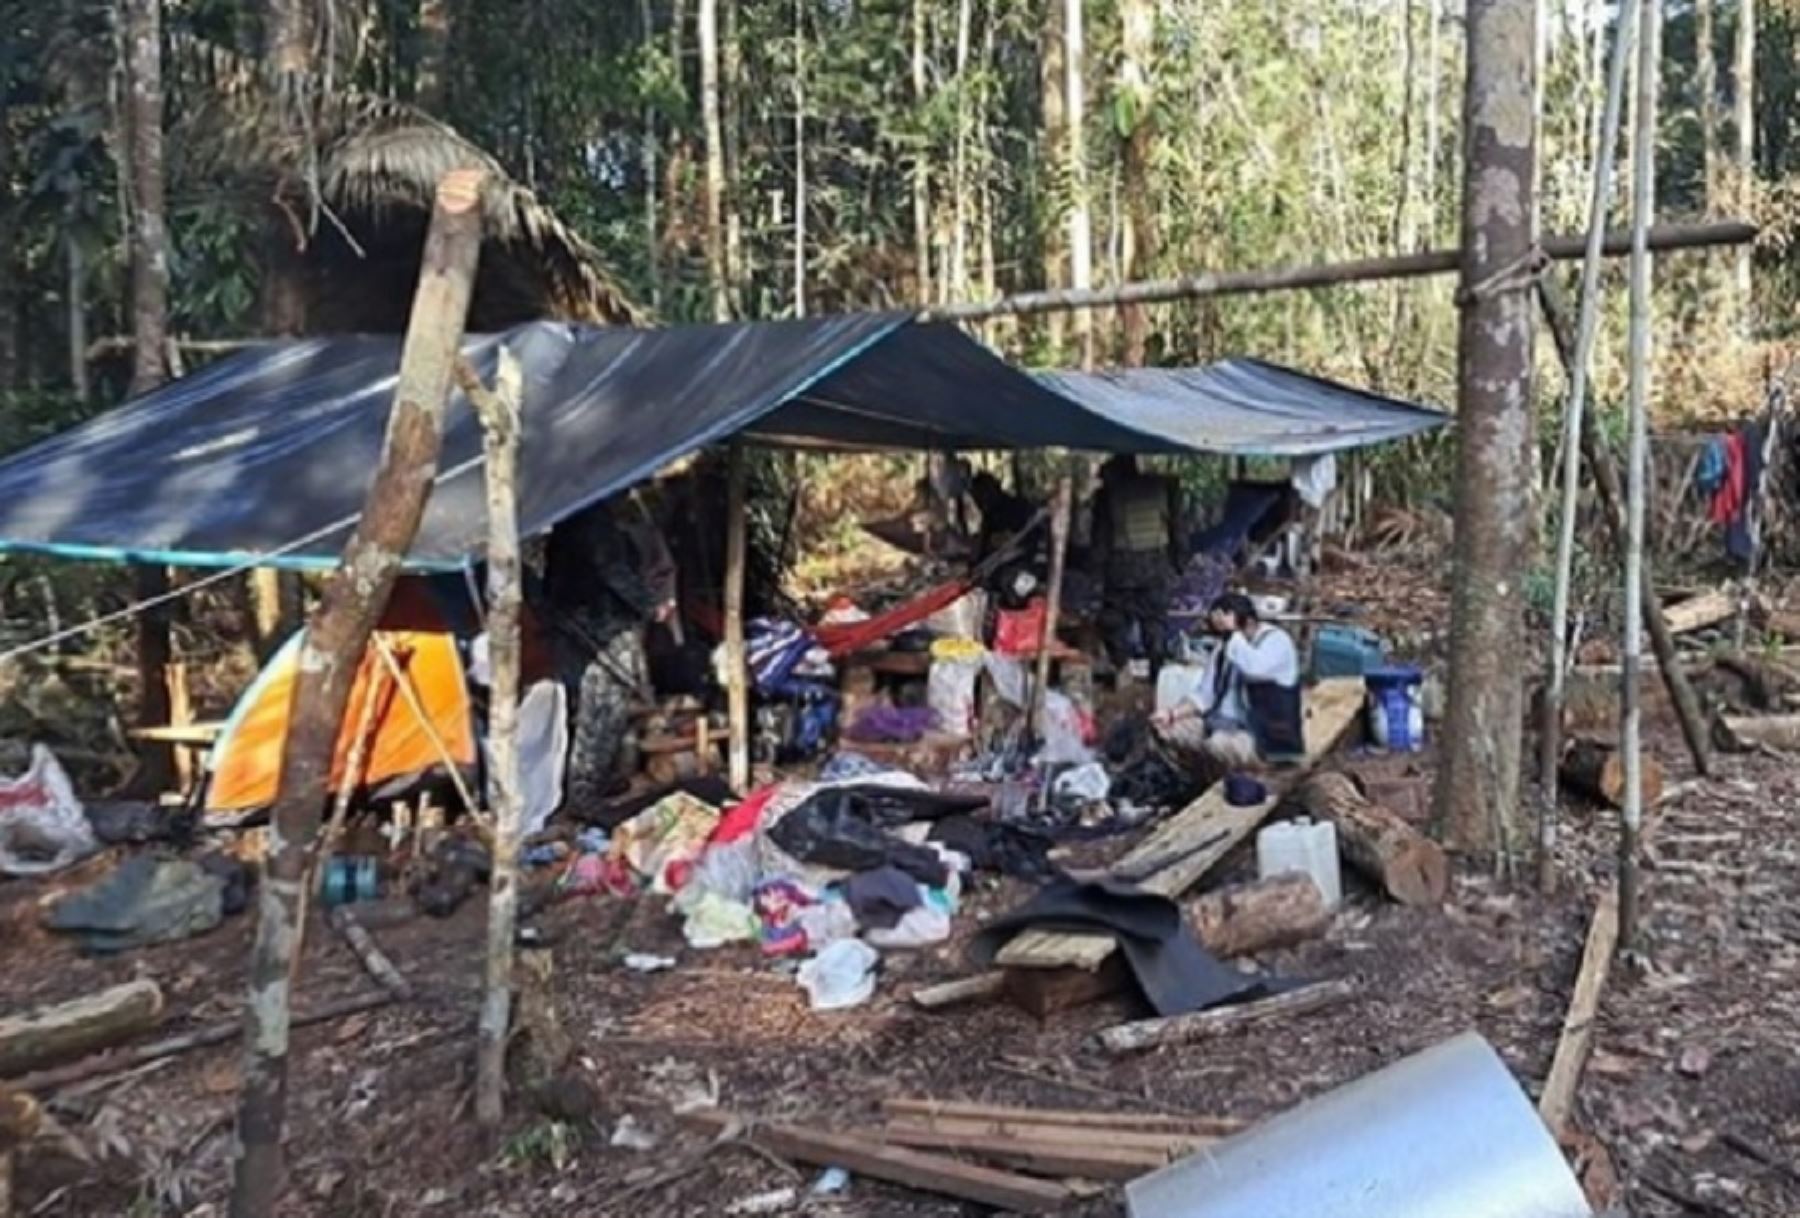 Fiscalía Especializada en Materia Ambiental de Maynas lideró un operativo de interdicción a materiales que eran usados en un campamento clandestino dedicado a la minería ilegal en la comunidad de Puca Urco, cerca de la quebrada Anguillal, en el límite de los departamentos de Loreto y Ucayali.